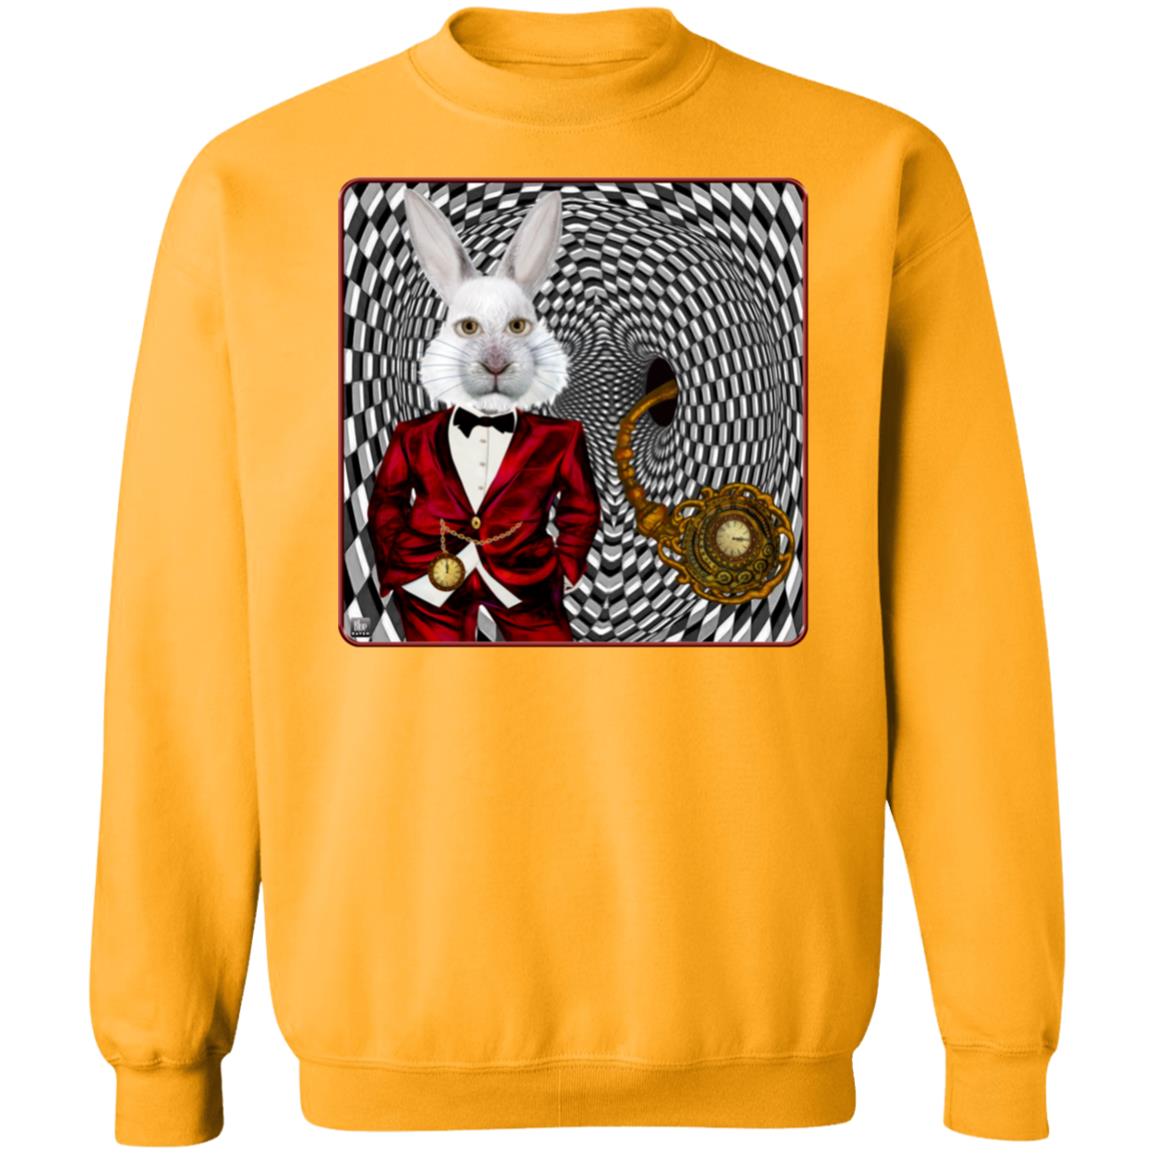 Portrait Of The White Rabbit - Unisex Crew Neck Sweatshirt